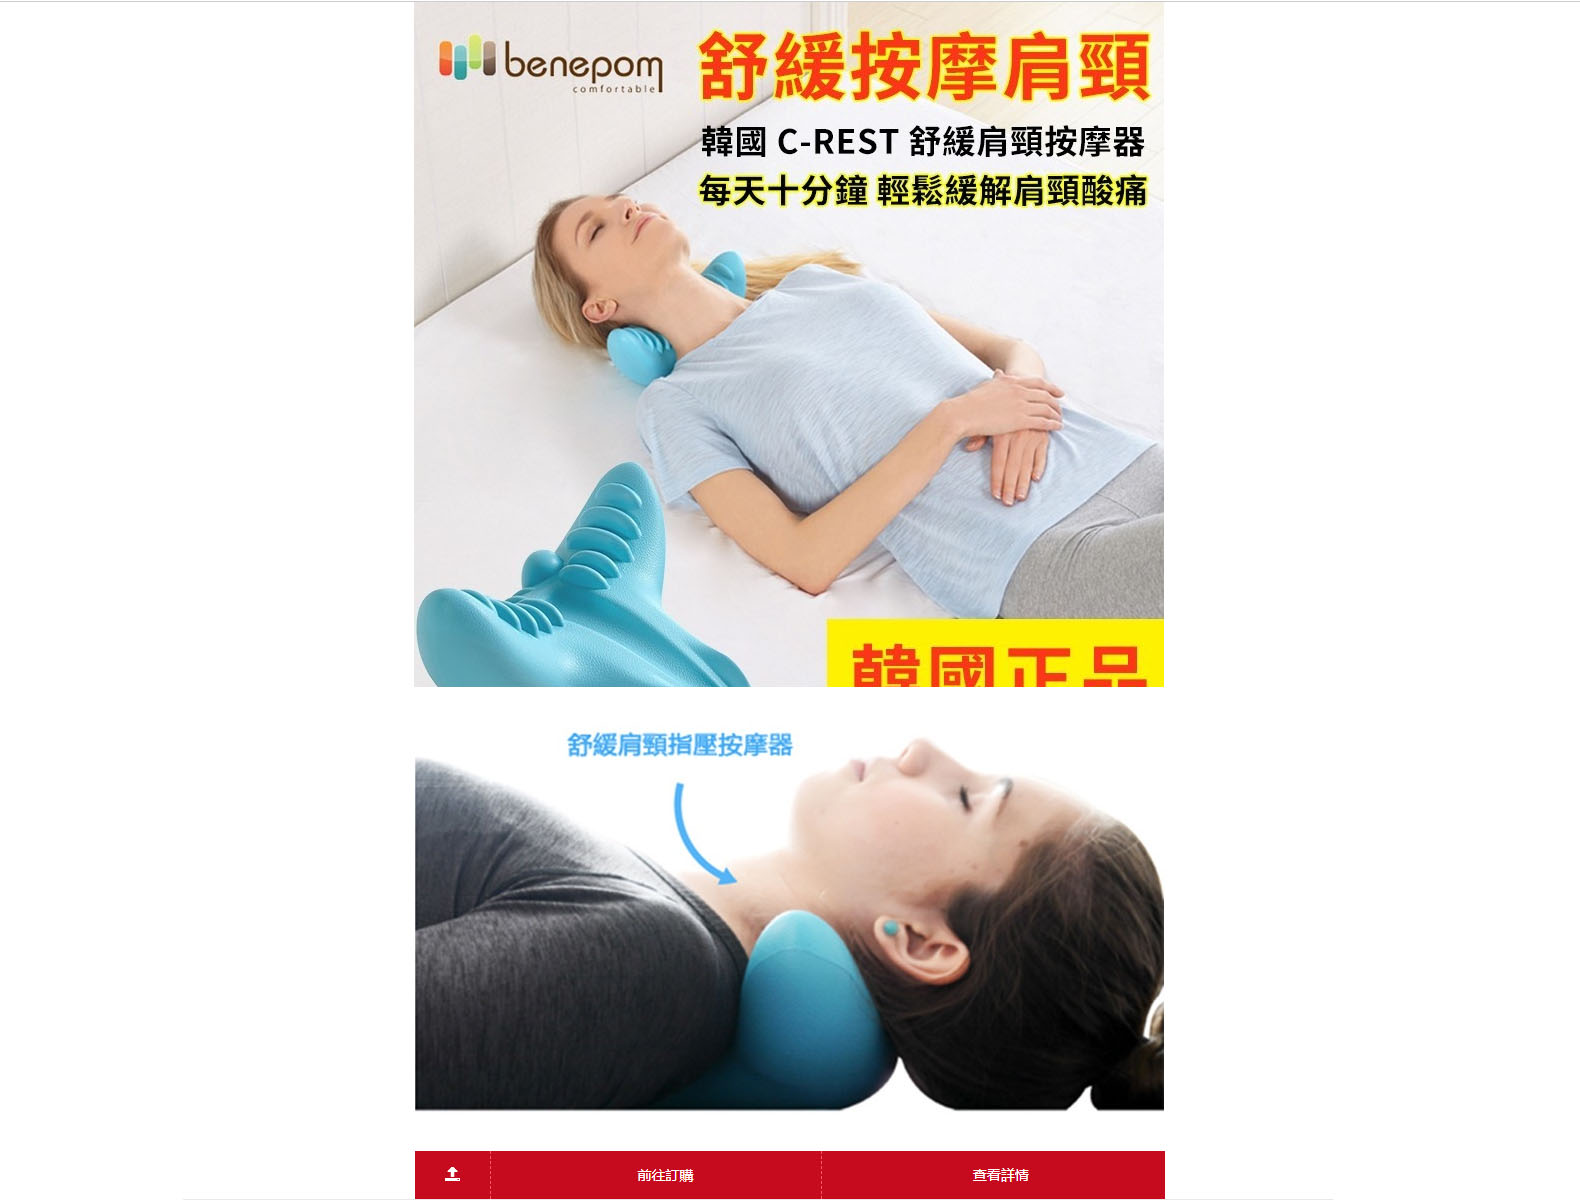 韓國肩頸按摩器專賣店-肩頸酸痛怎麼辦,頸椎痛舒緩方法推薦,按摩枕